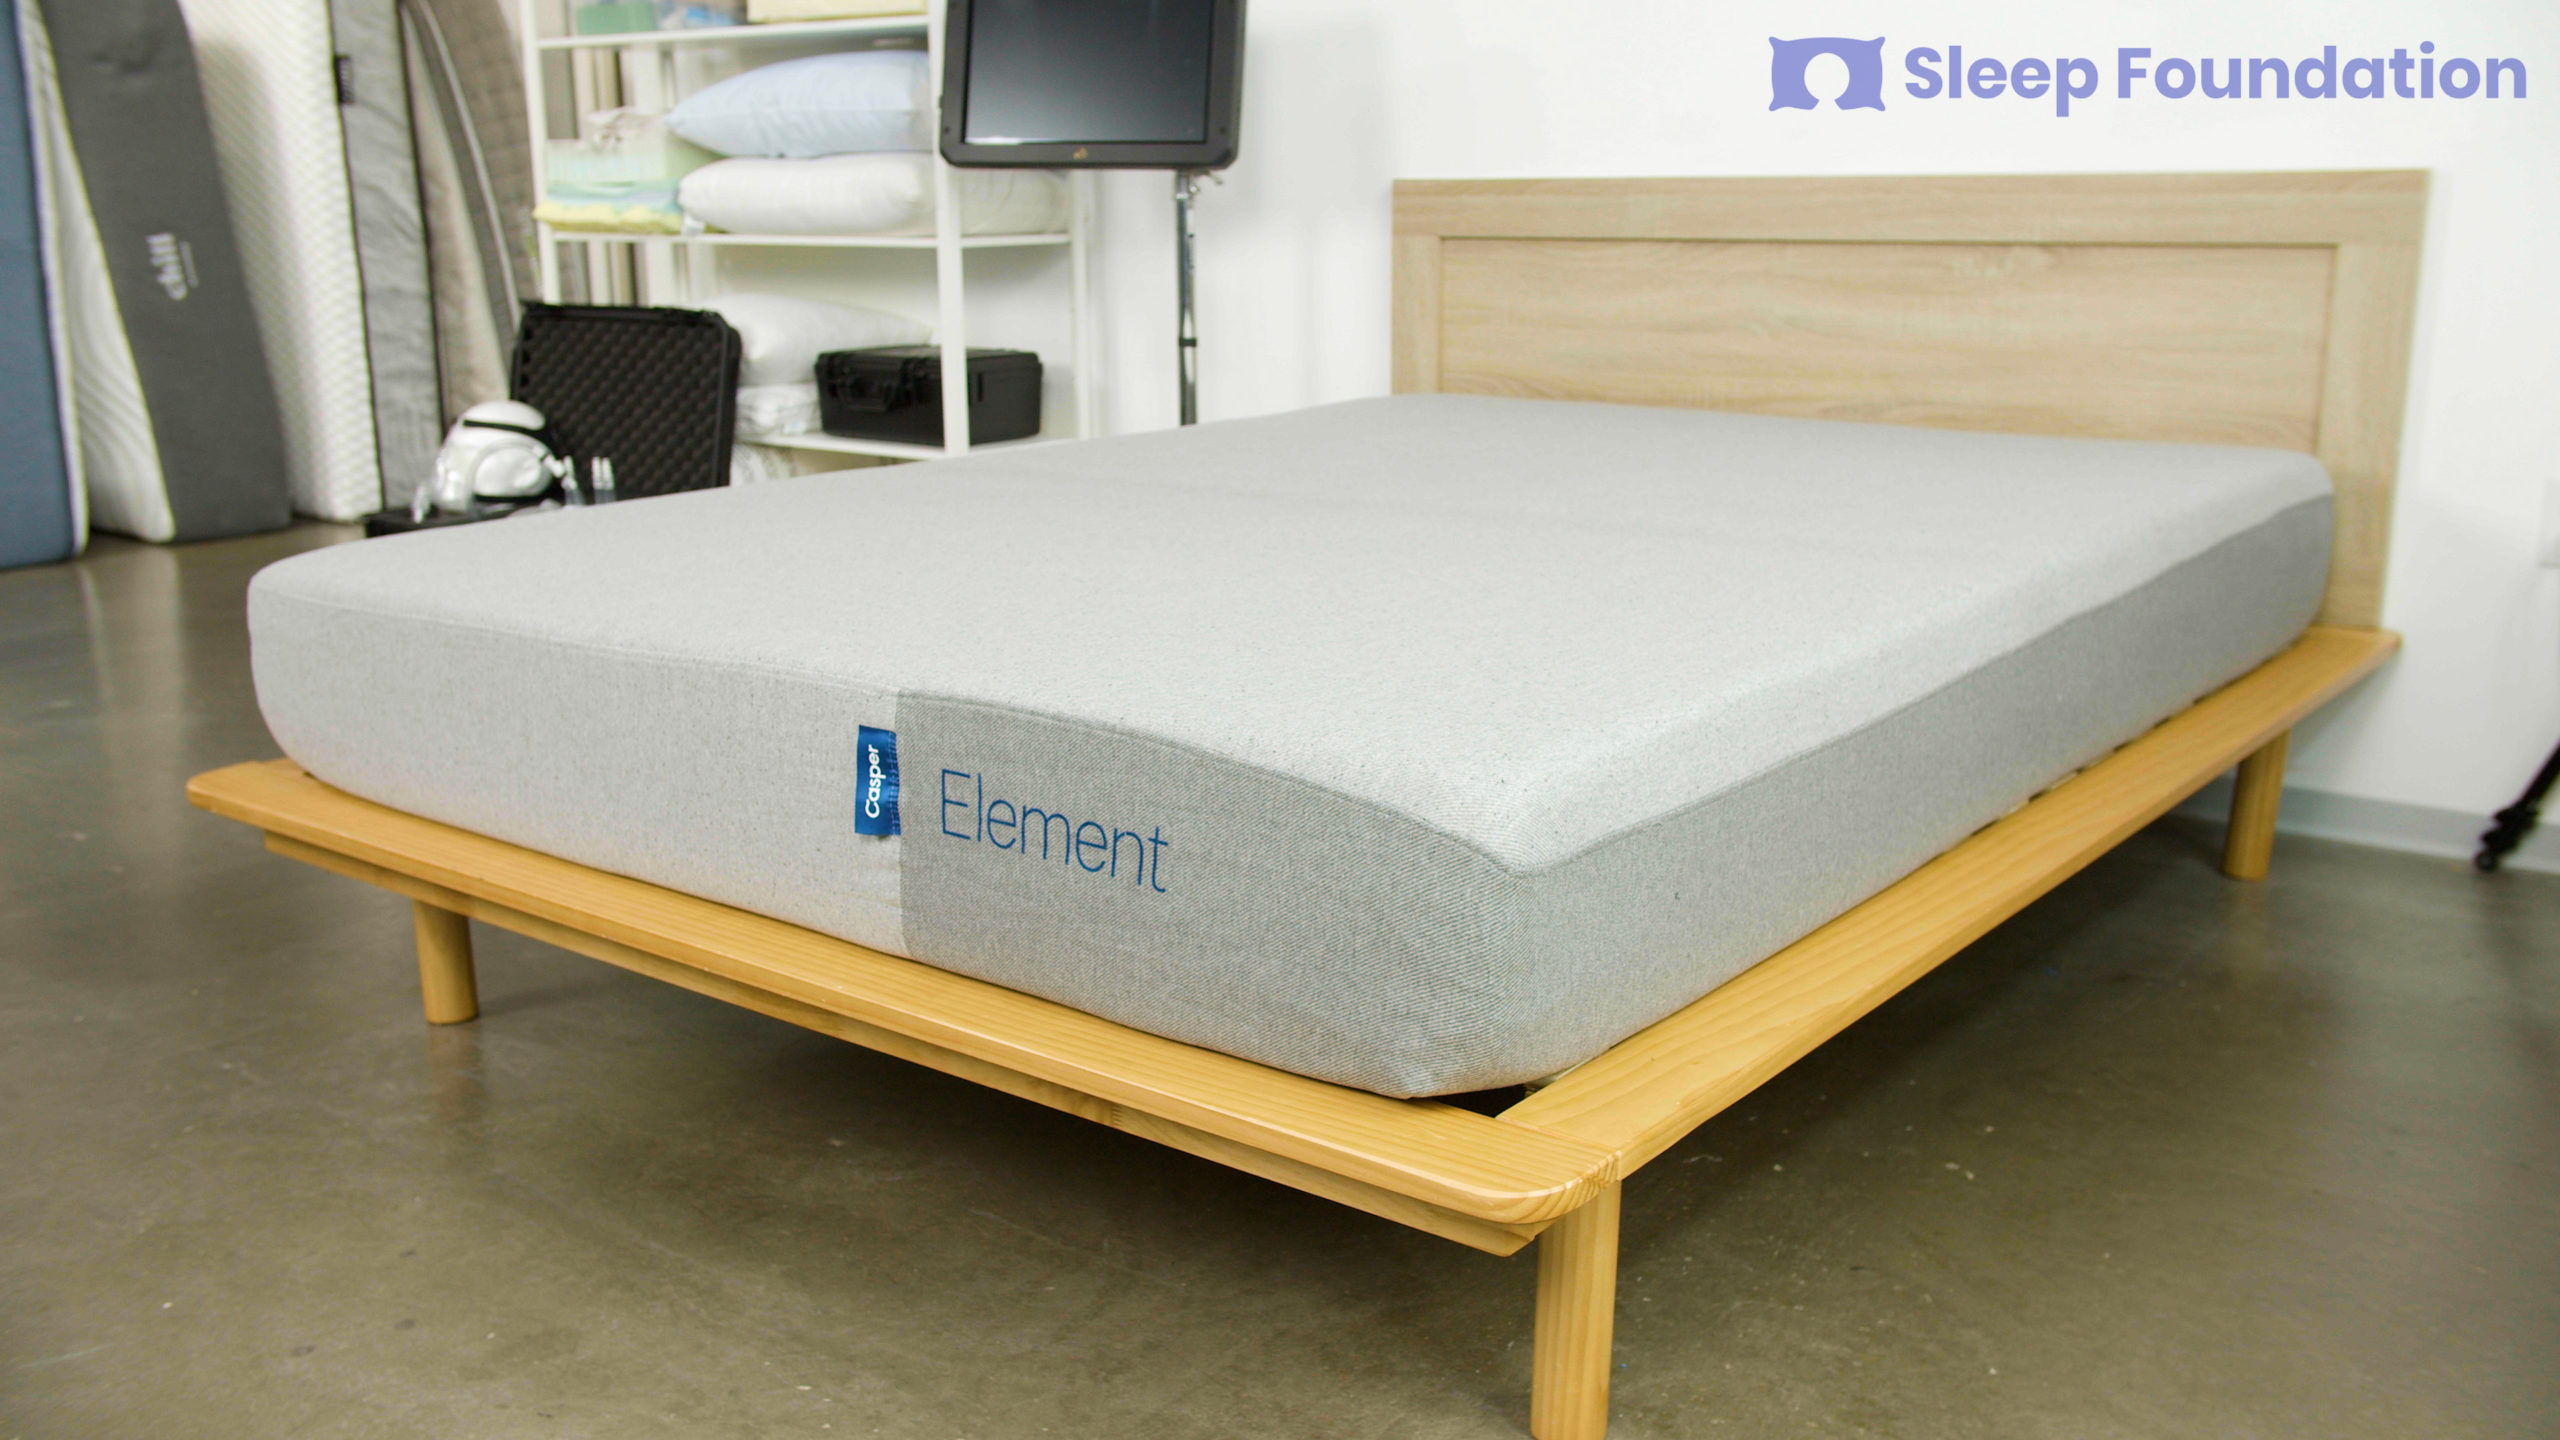 reviews for the casper sleep mattress